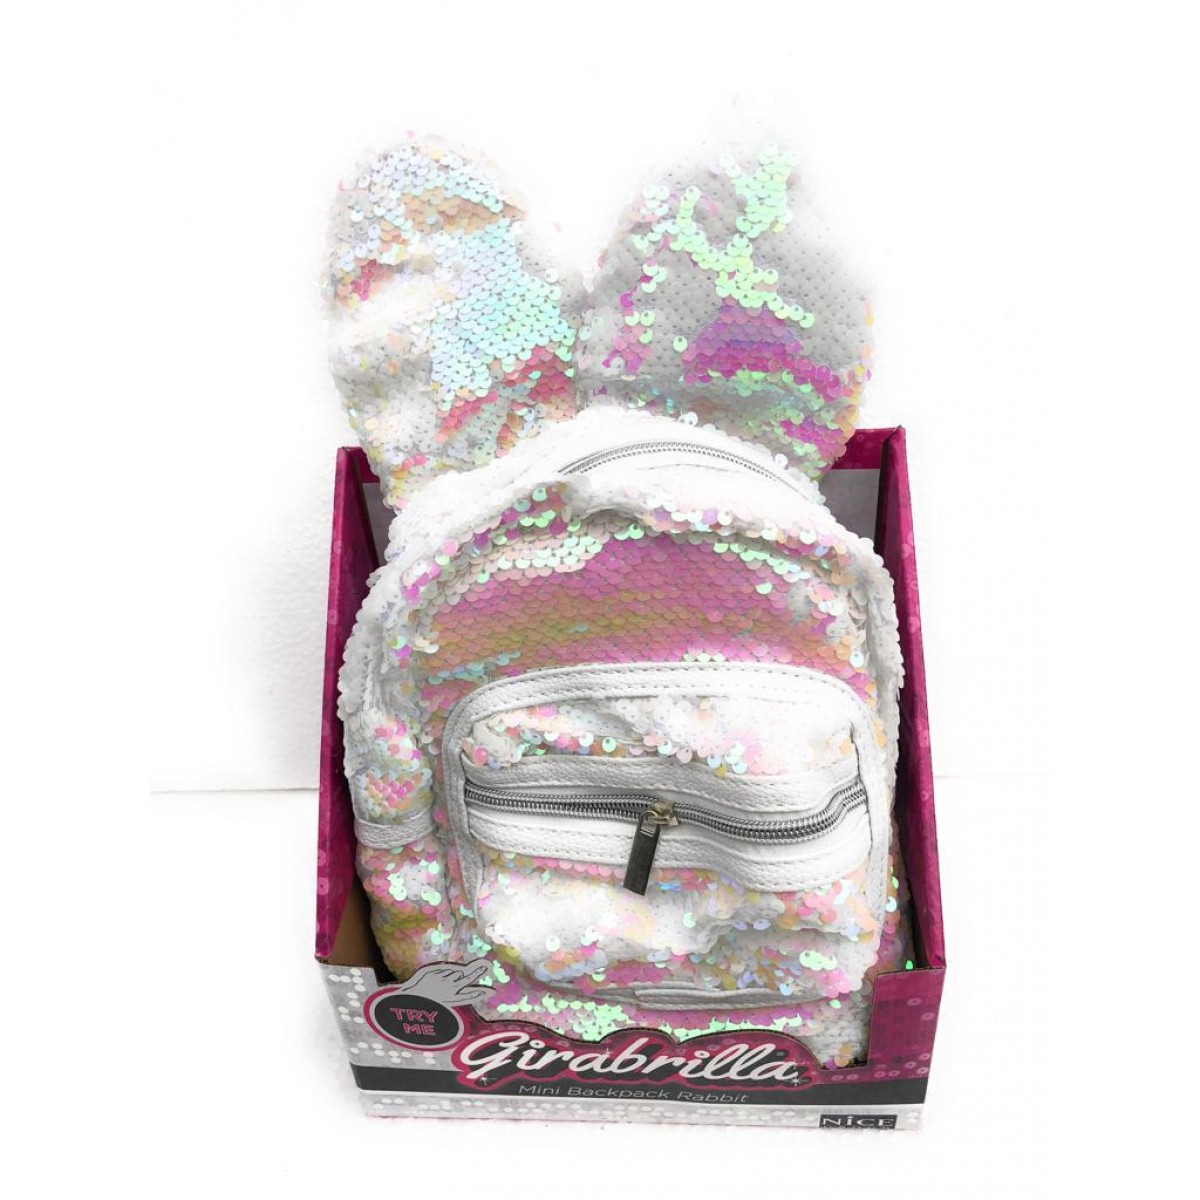 Girabrilla Mini backpack Rabbit Zaino con orecchie colore Bianco